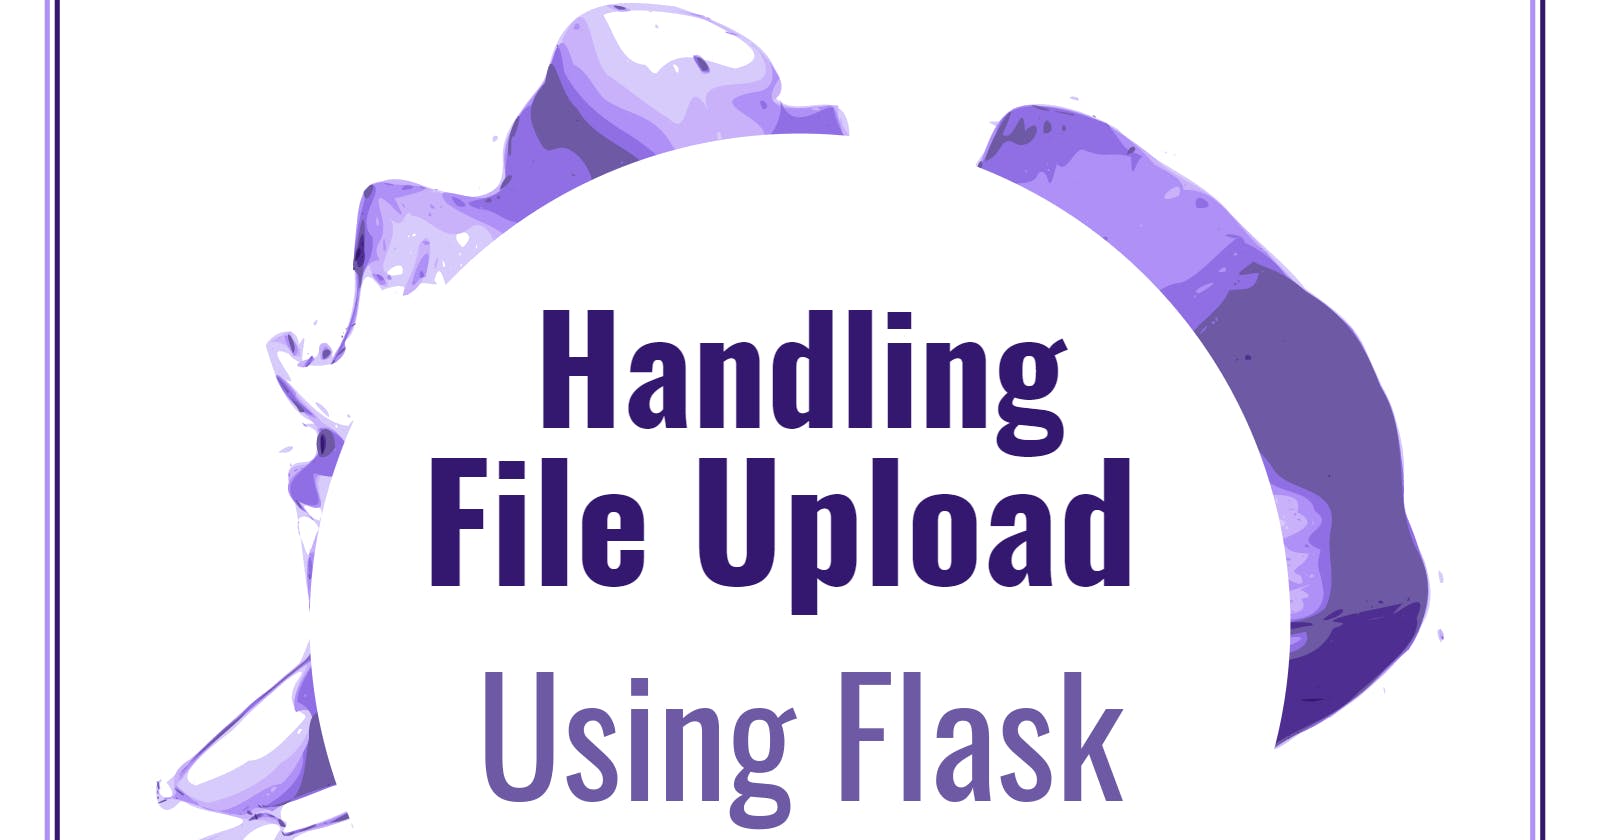 Handling File Upload using flask